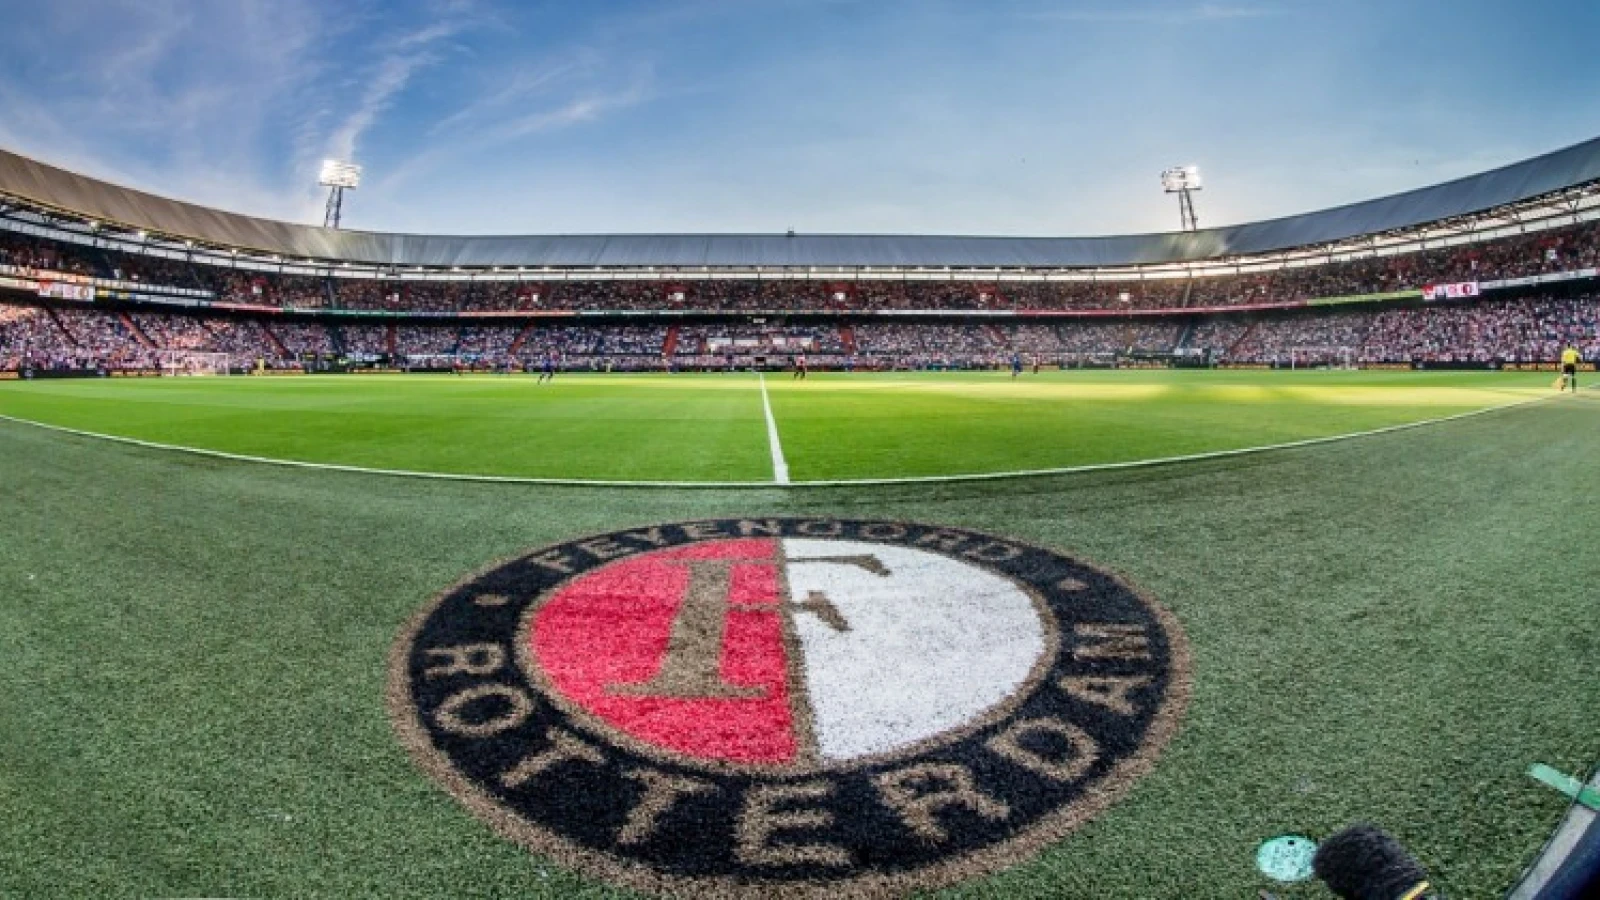 LIVE | Feyenoord - ADO Den Haag 0-2 | Einde wedstrijd